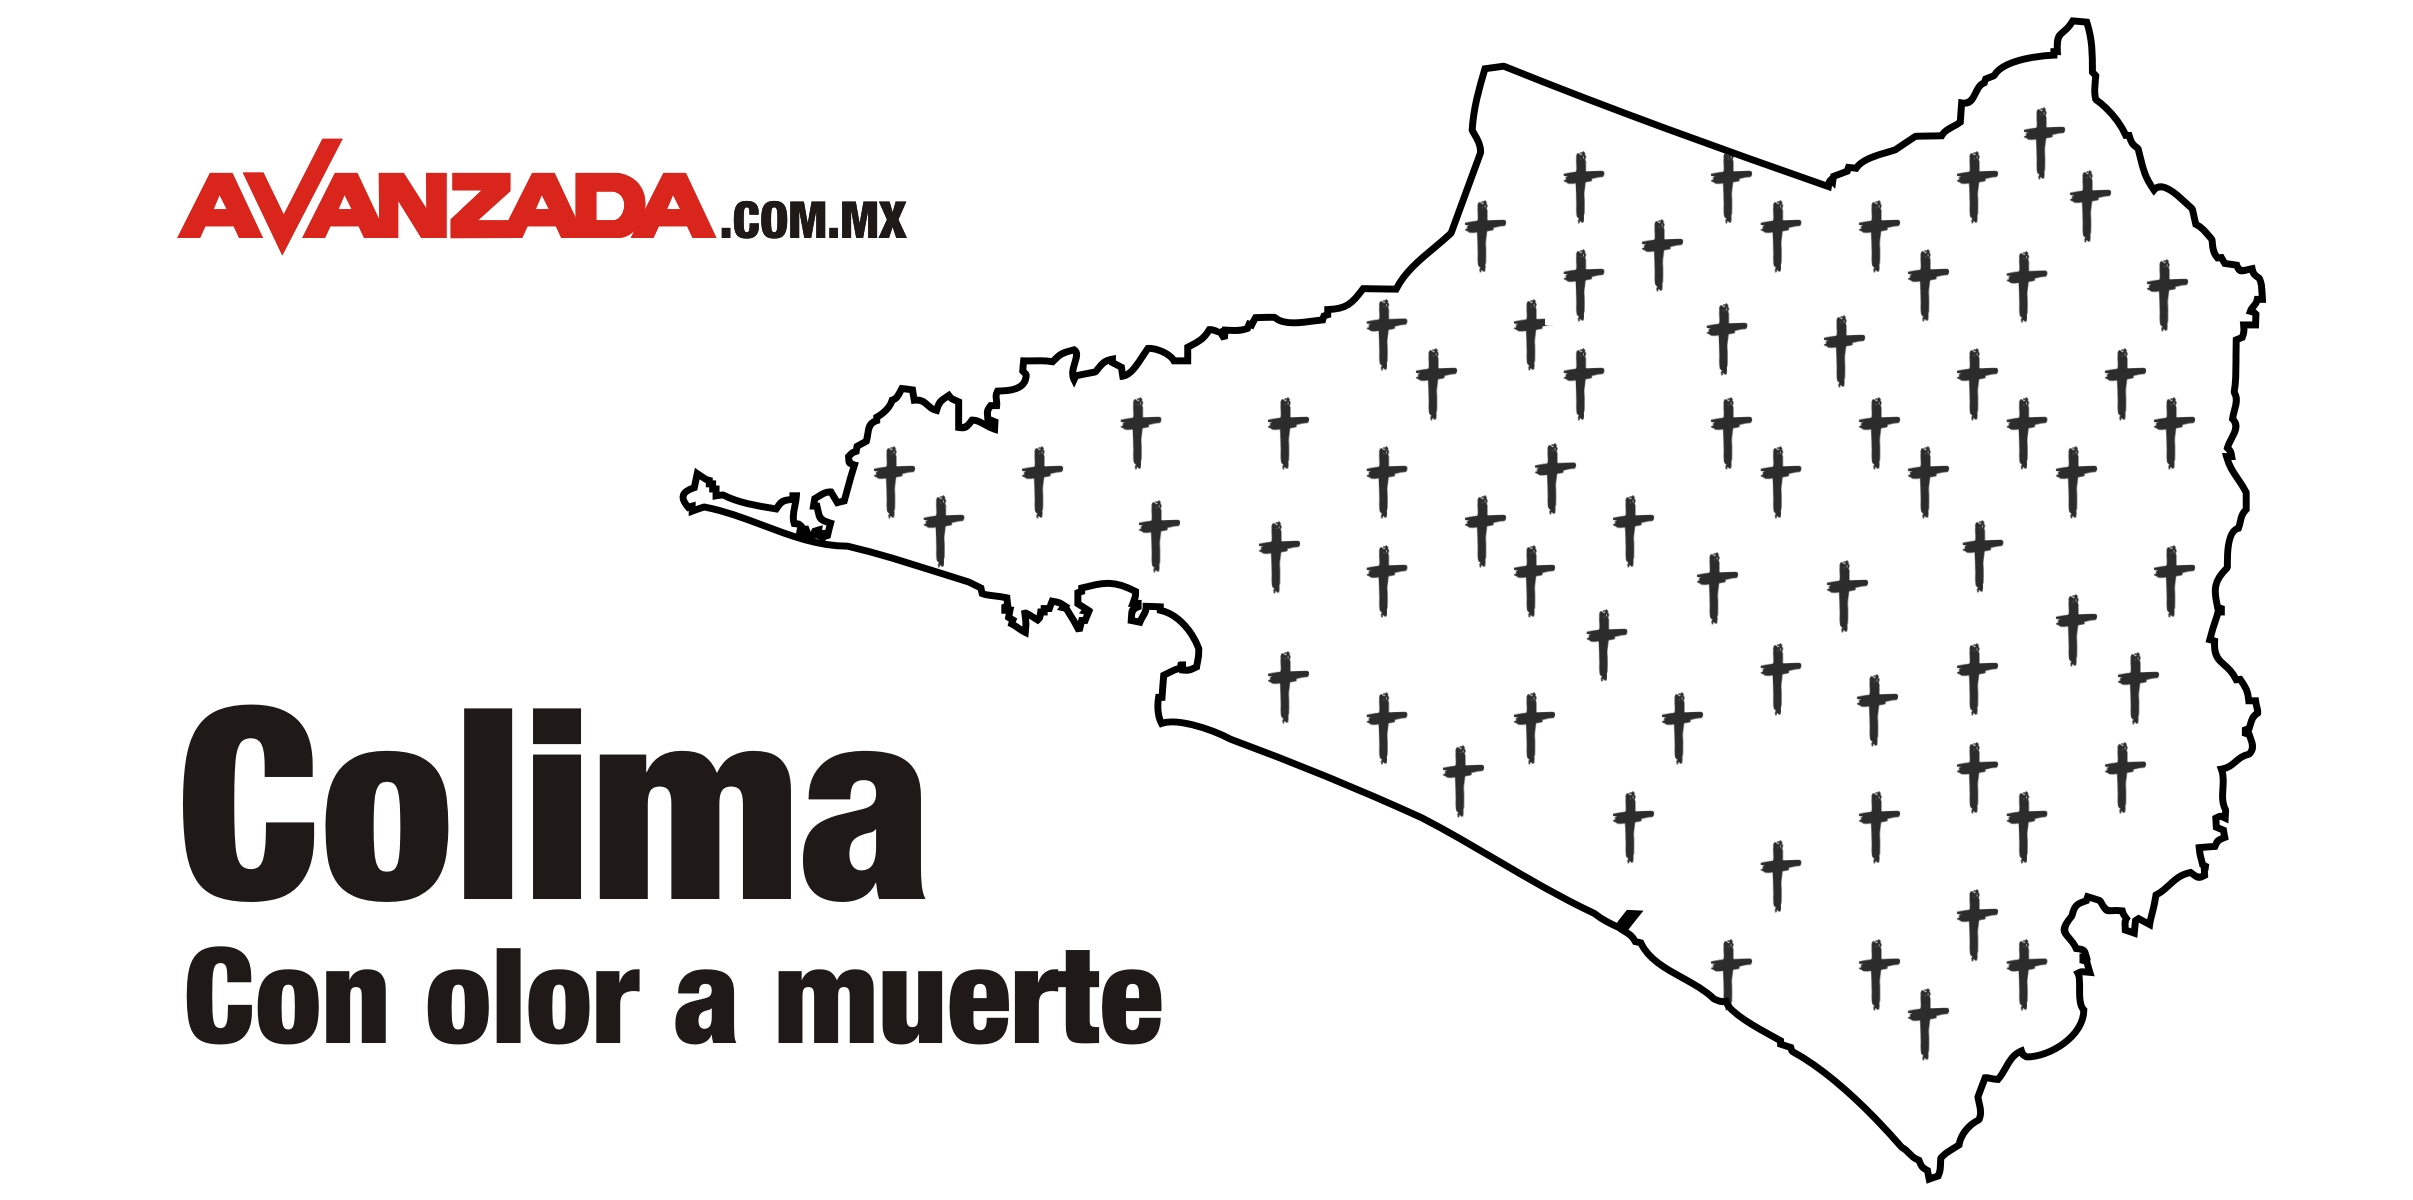 Asesinaron a 2061 personas en Colima en los últimos tres años